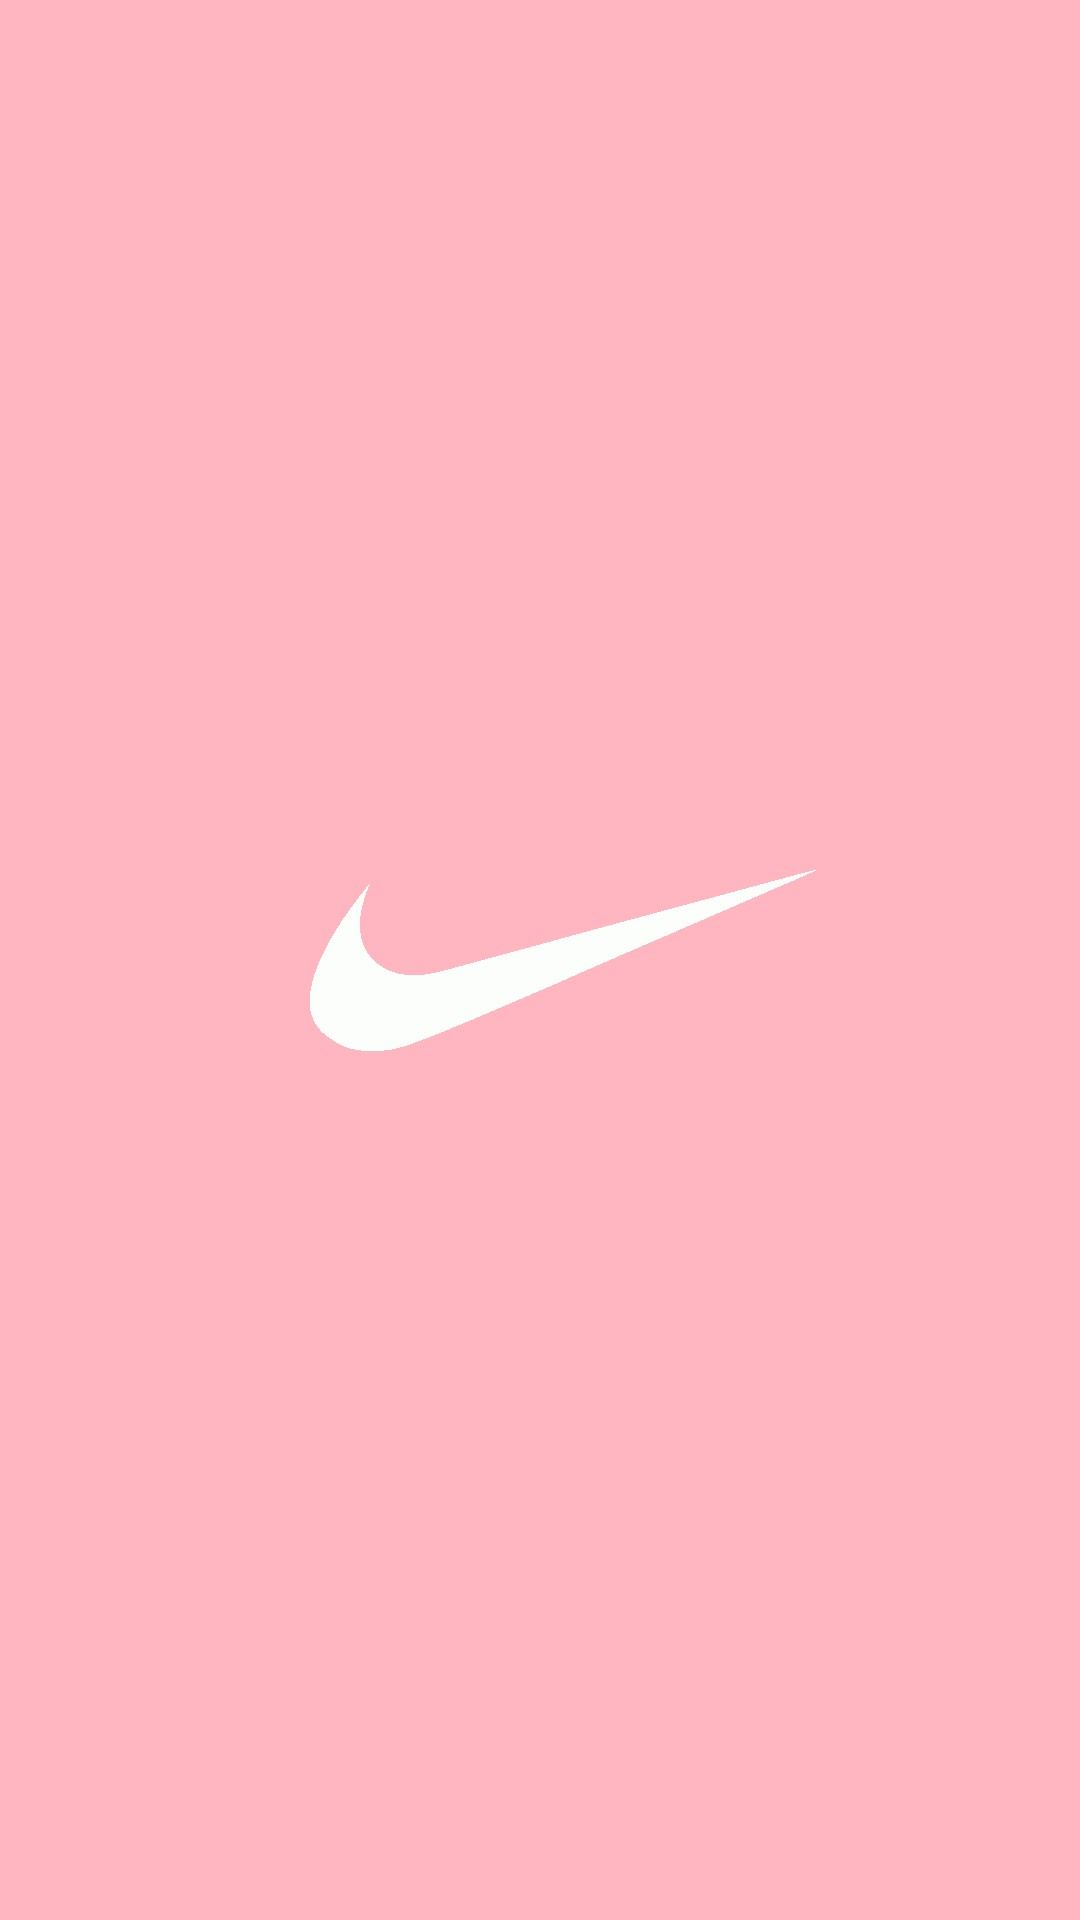 Nếu bạn là một fan của nhãn hiệu Nike và yêu màu hồng, thì đừng bỏ lỡ việc sở hữu sản phẩm Nike hồng chính hãng. Với thiết kế tinh tế và chất liệu bền chắc, đó sẽ là một sự lựa chọn hoàn hảo cho những ngày vui chơi và tập luyện.